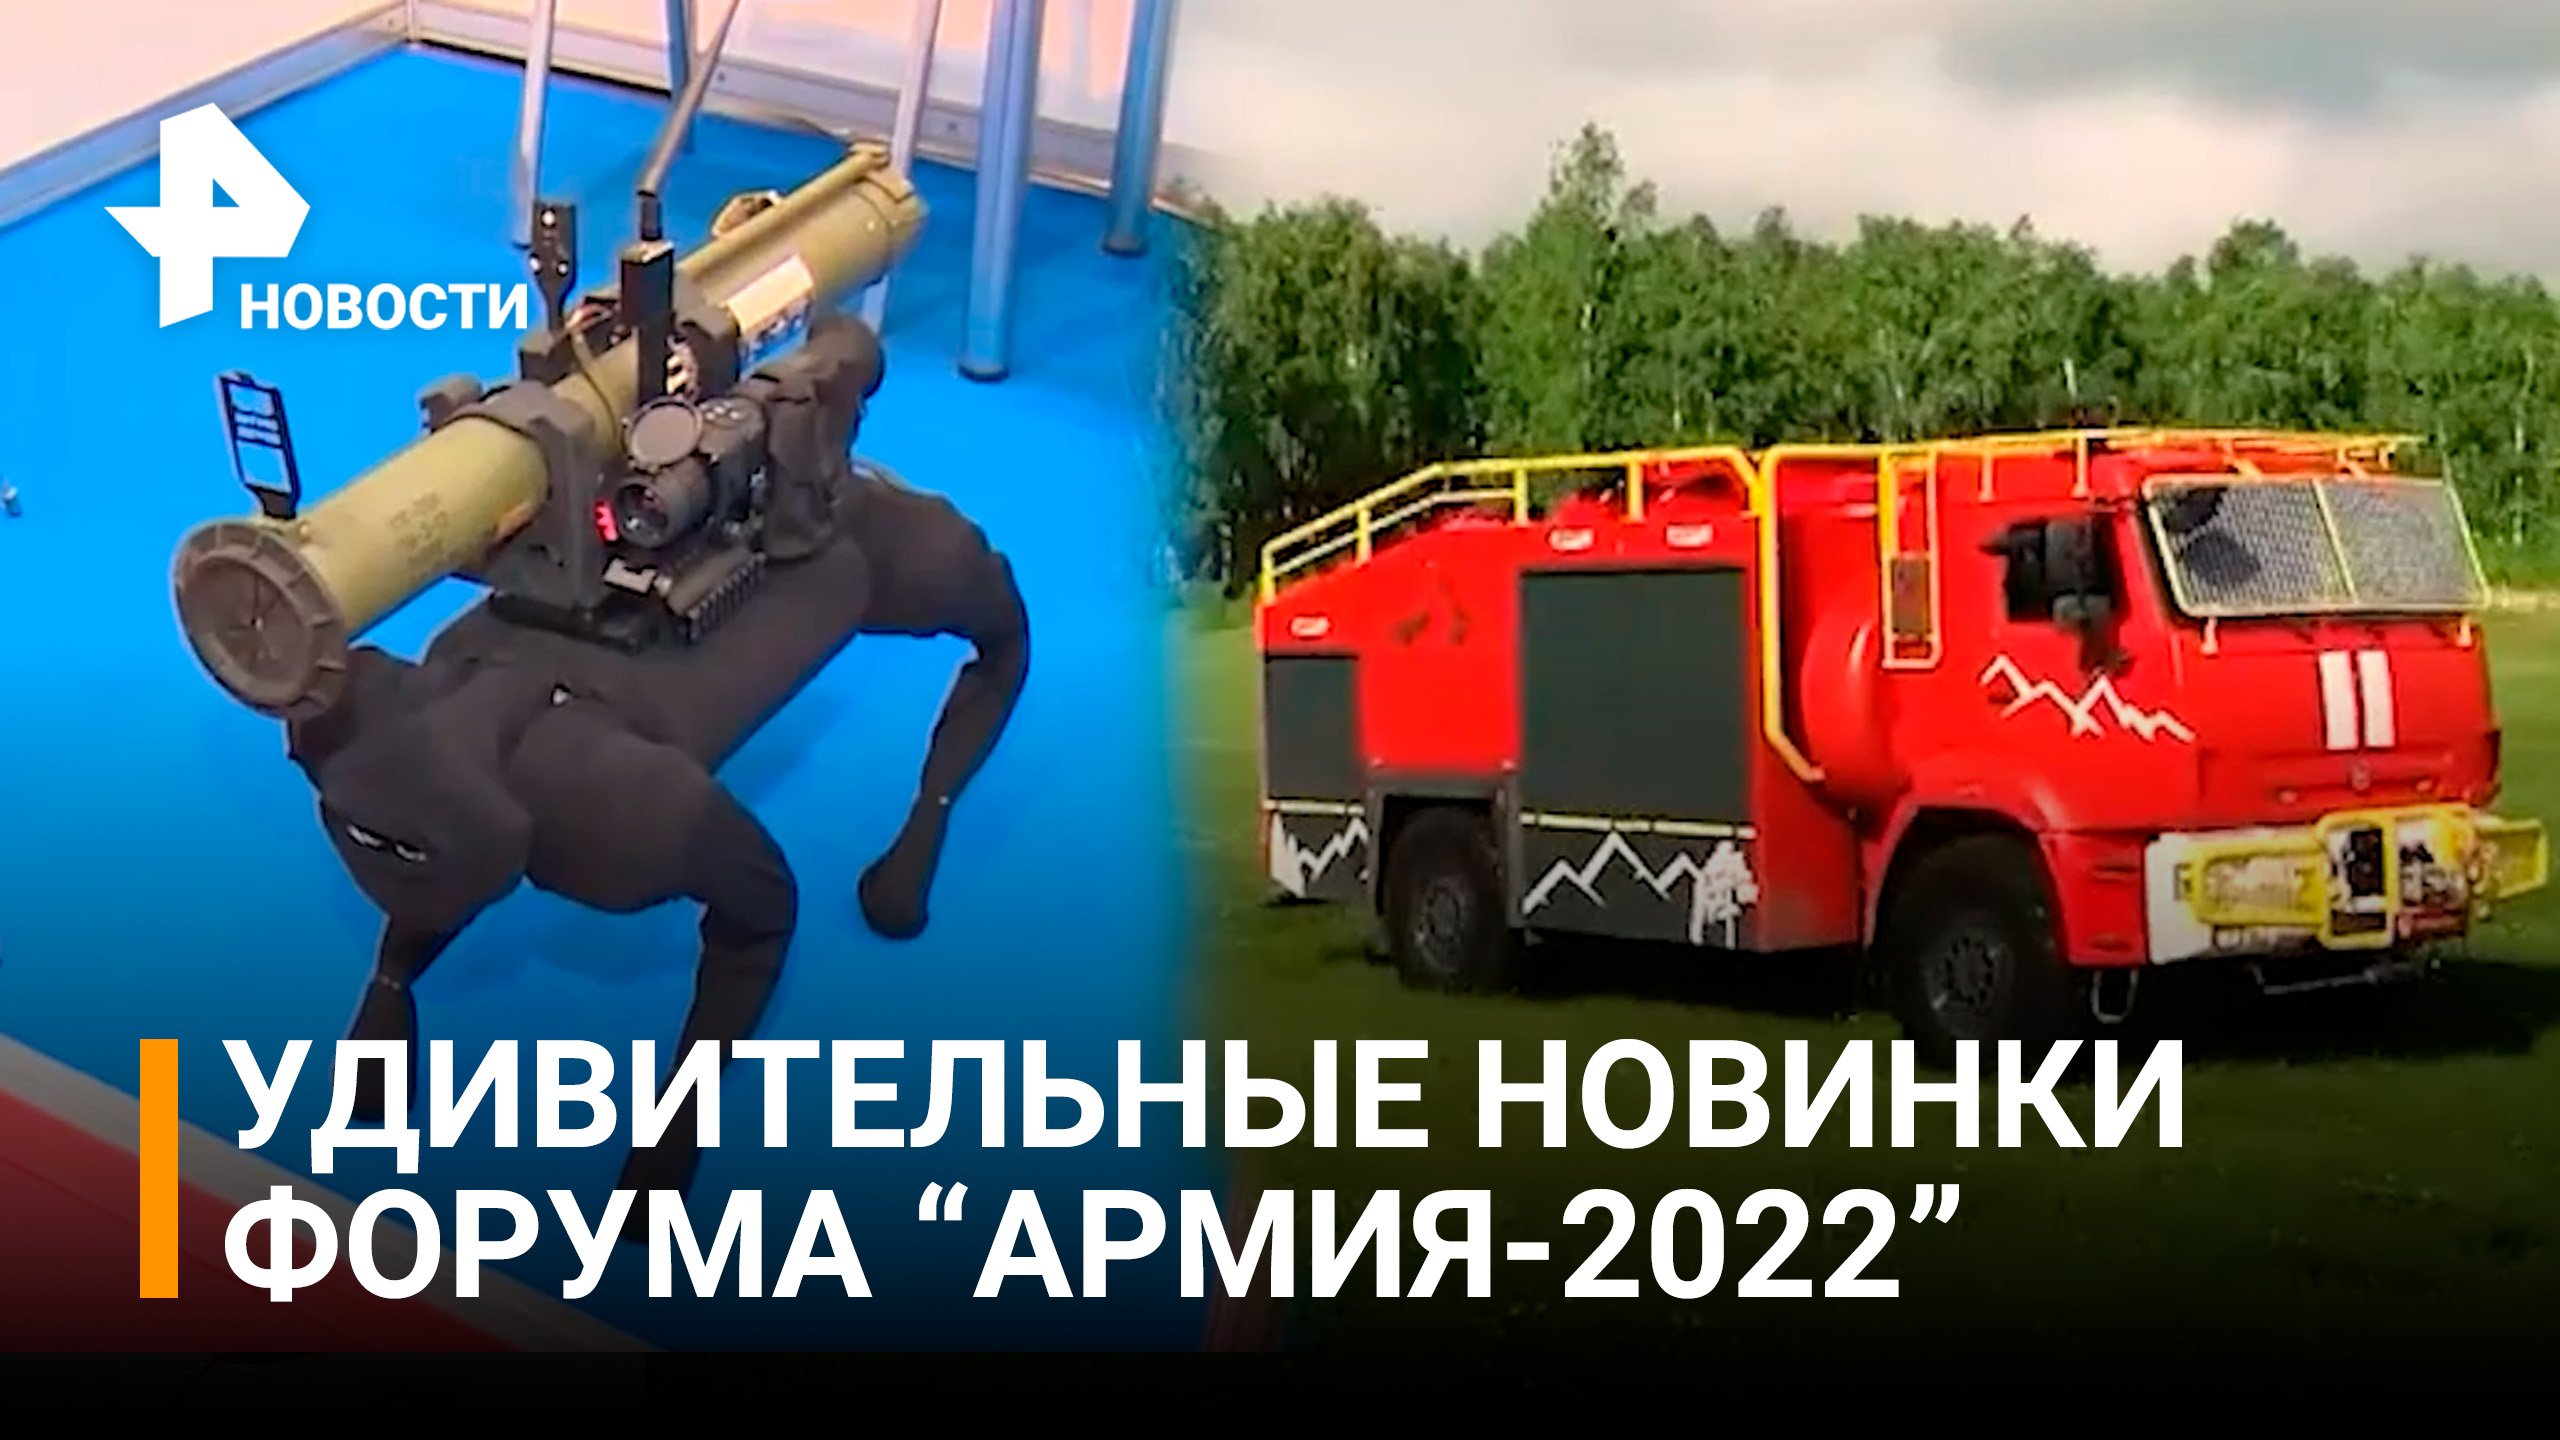 Роботы и "красный гигант" удивили гостей форума "Армия-2022" / РЕН Новости